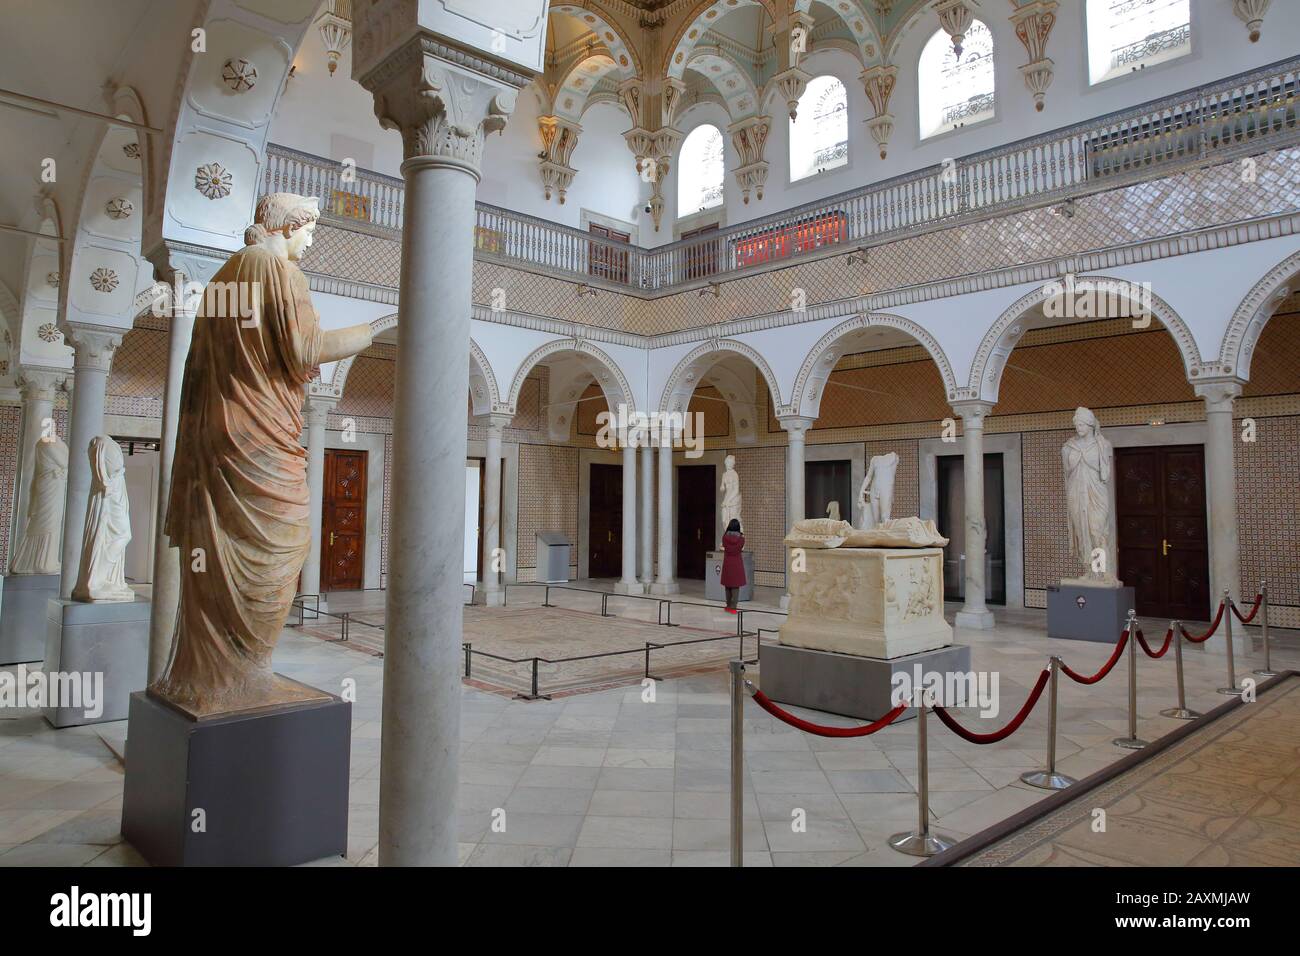 Tunis, TUNISIA - 08. DEZEMBER 2019: Der Carthage-Raum im Inneren des Bardo Museums mit römischen Skulpturen, Arkaden, Säulen und Mosaiken Stockfoto